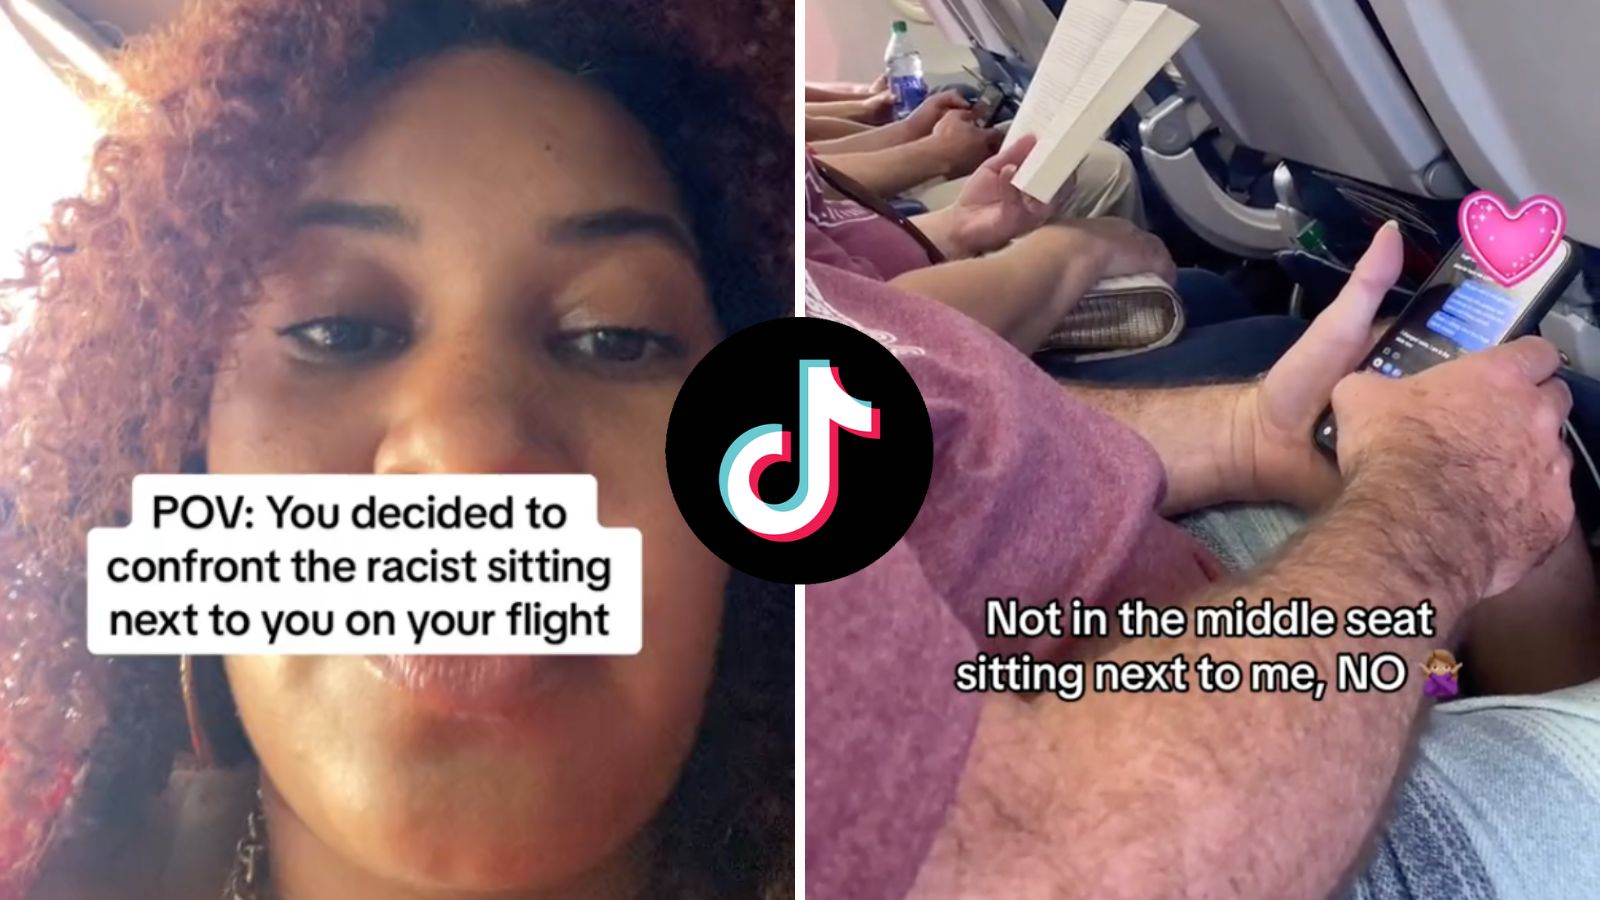 El encuentro de un pasajero de vuelo con un hombre racista se vuelve viral después de que lo ven enviándole un mensaje de texto